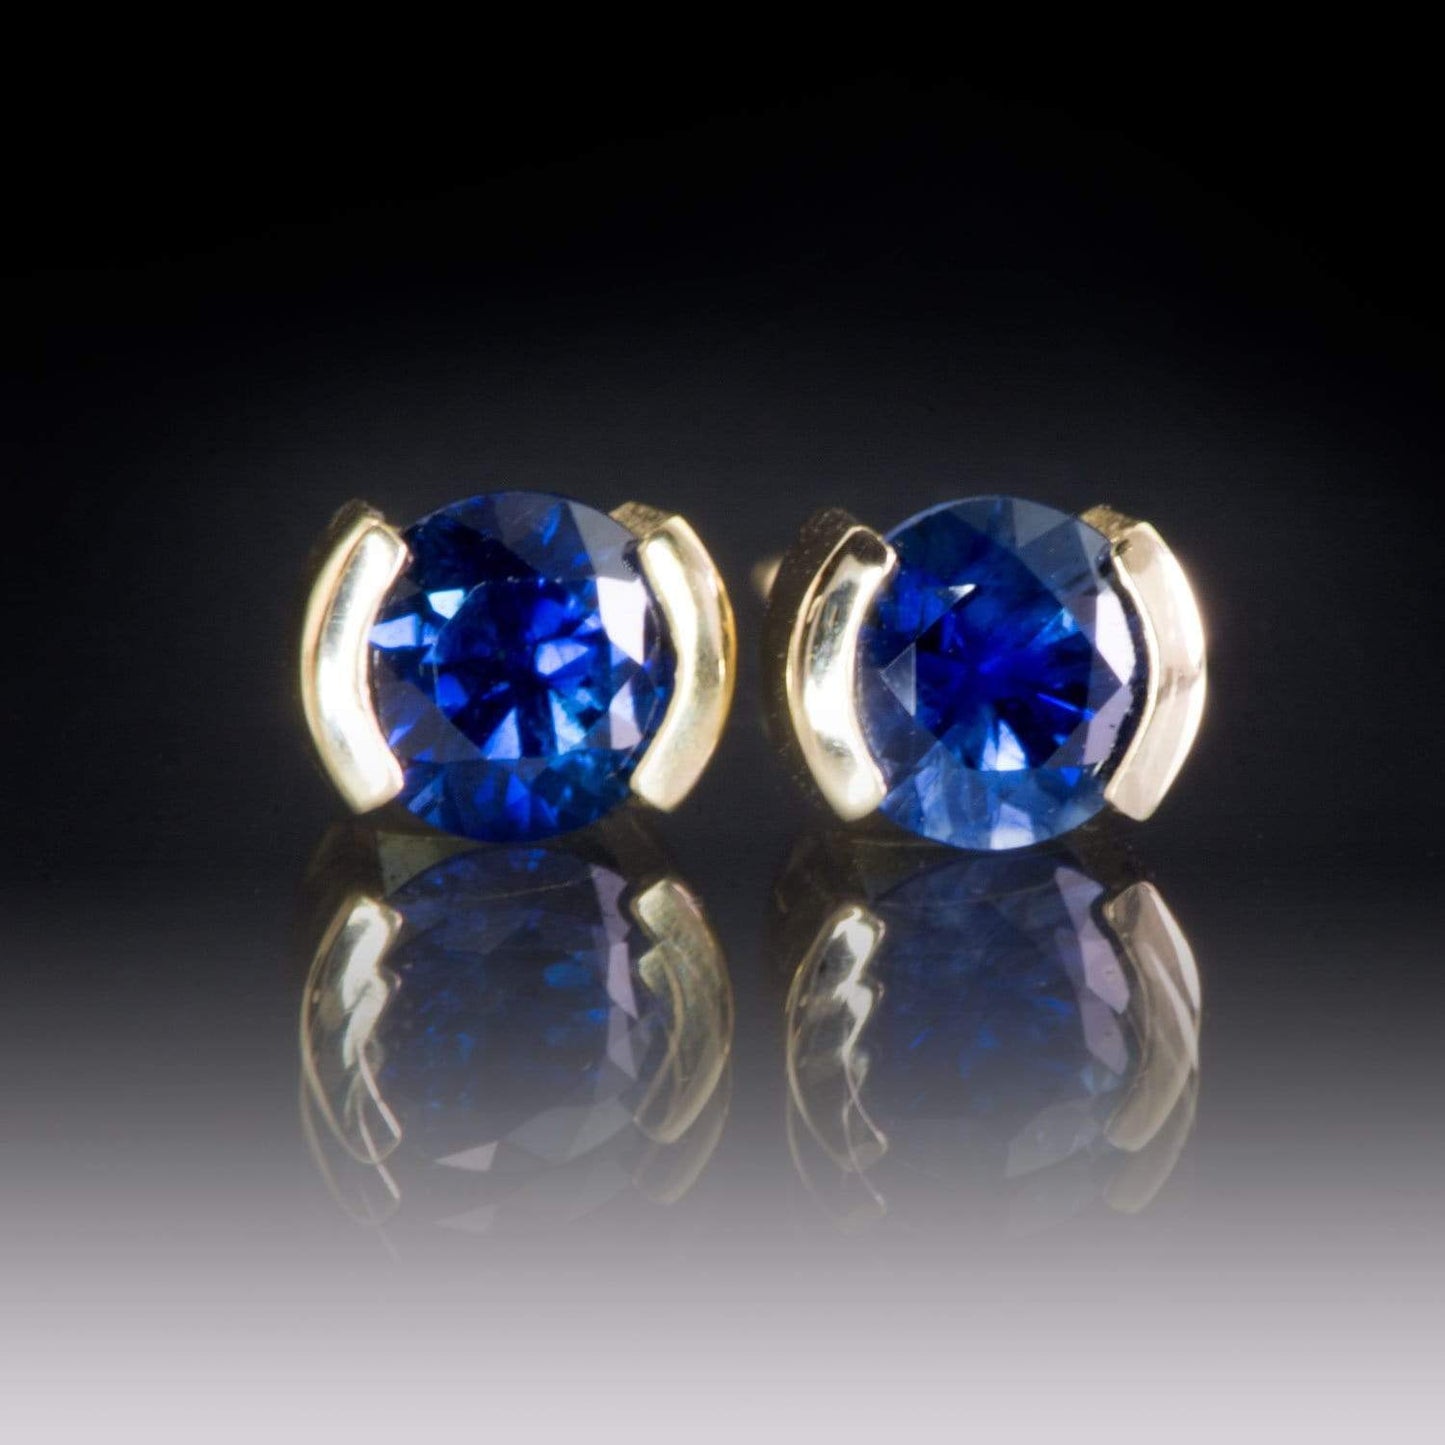 Blue Sapphire 14k Gold Half Bezel Stud Earrings 14k Yellow Gold / 4mm Blue Sapphire Earrings by Nodeform